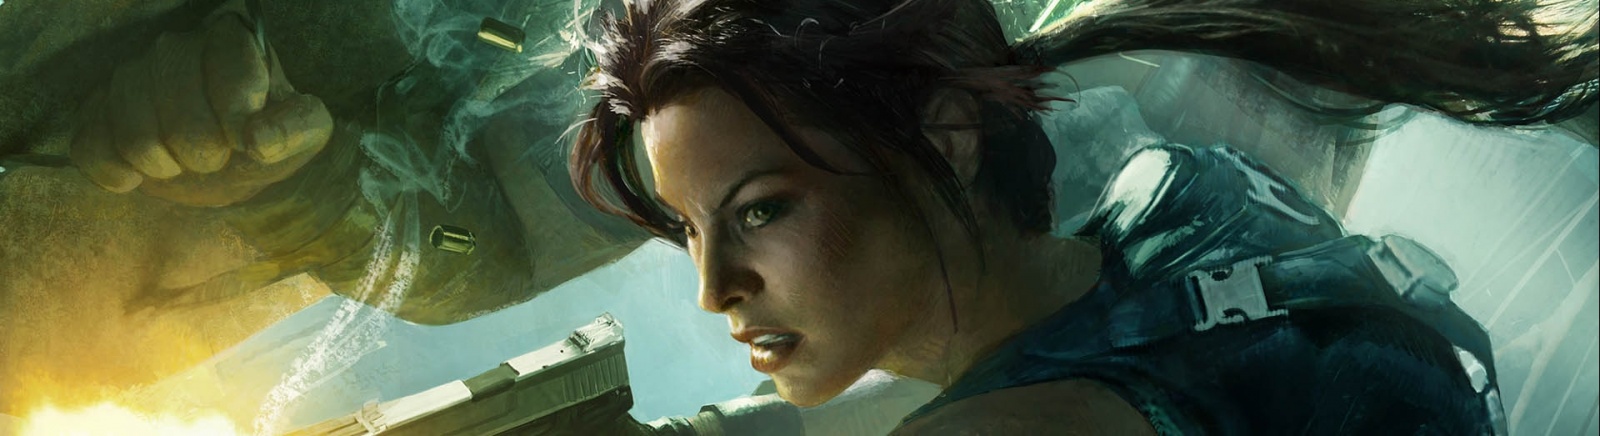 Дата выхода Lara Croft and the Guardian of Light  на PC, Nintendo Switch и iOS в России и во всем мире